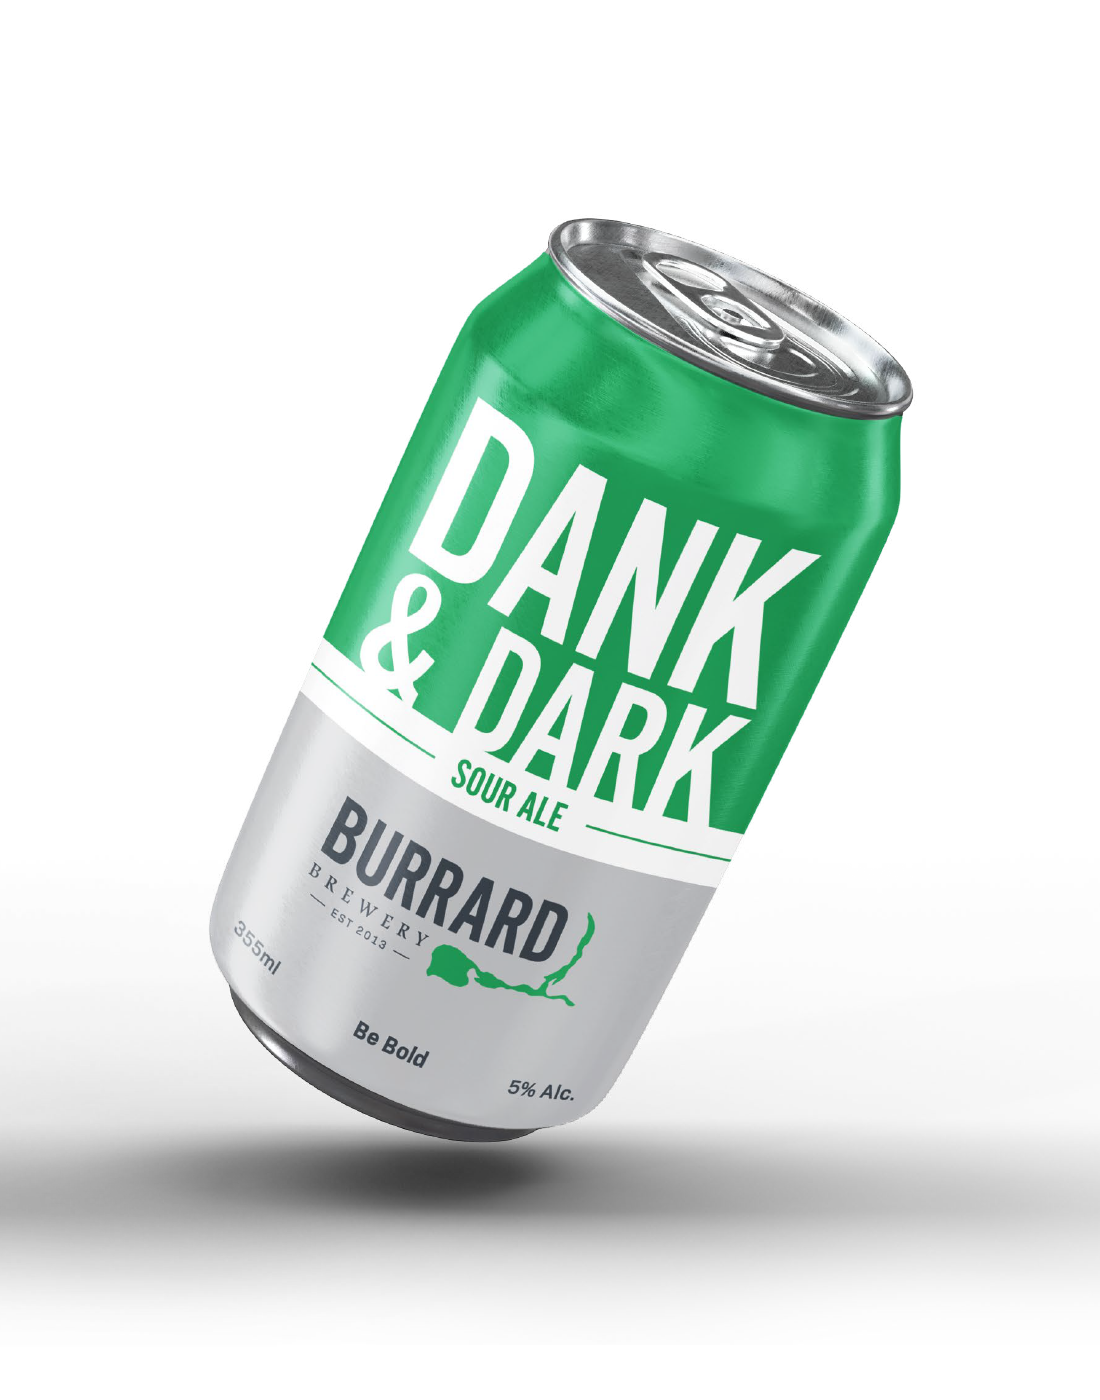 Burrard Brewery - Branding & Packaging Design 2